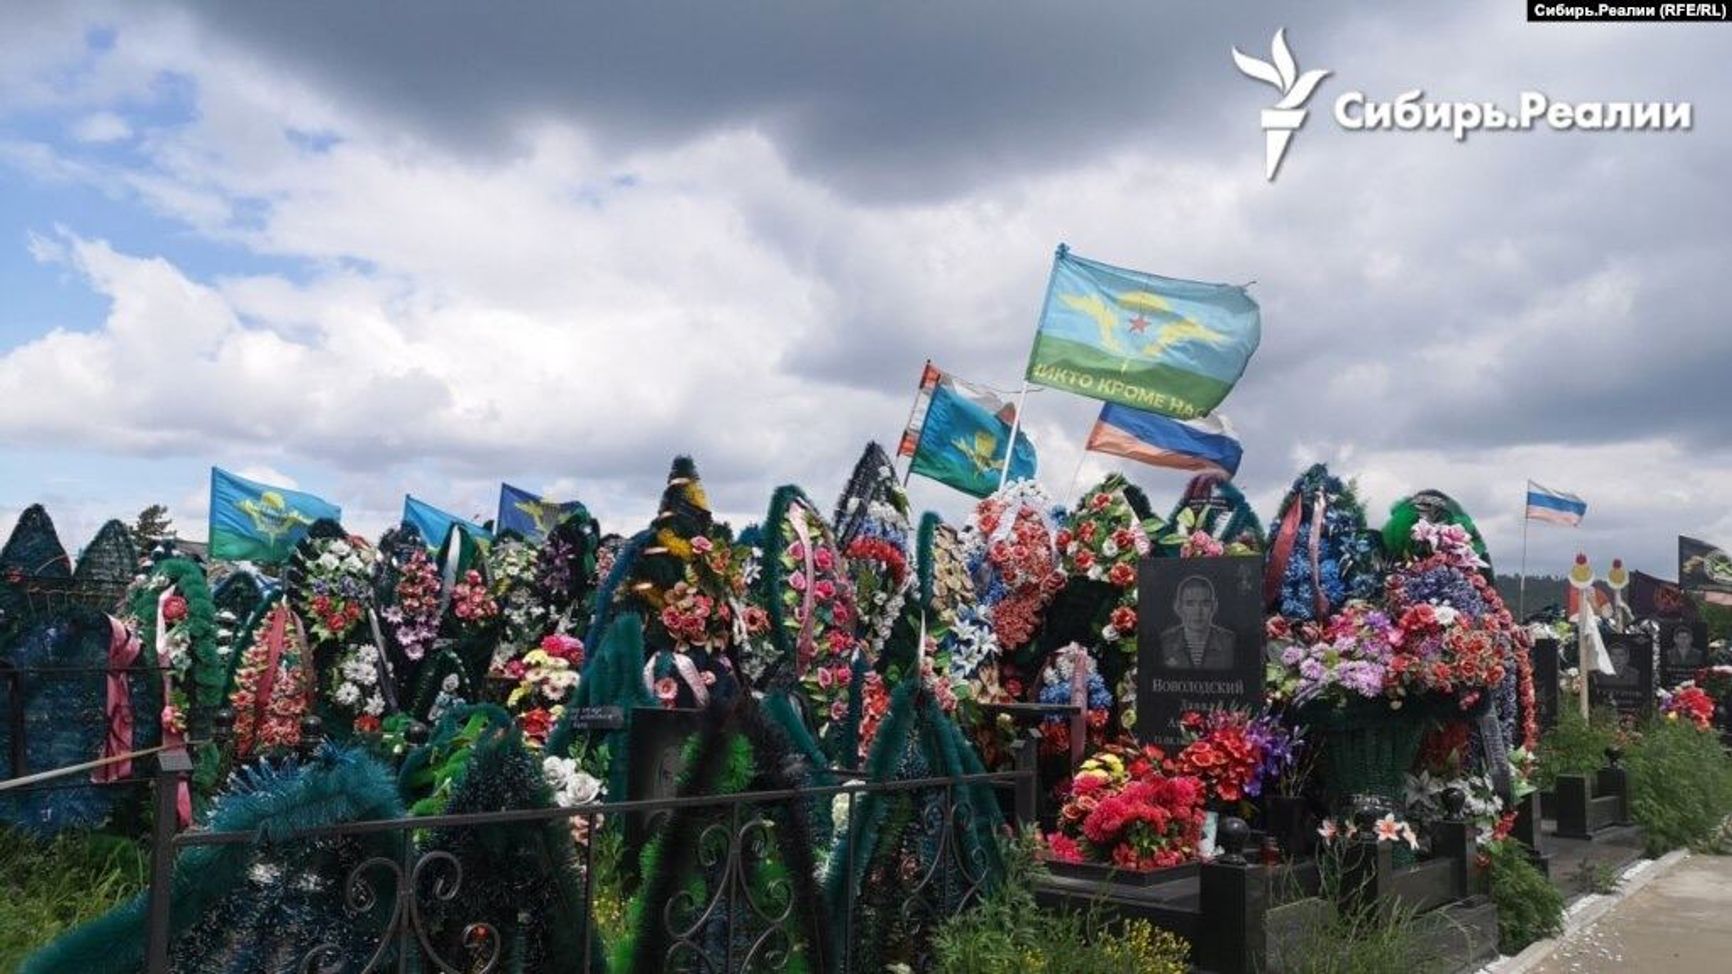 Кладбище «Южное» в Улан-Удэ. По дороге на кладбище висит агитационный билборд с надписью «Присоединяйся к своим».